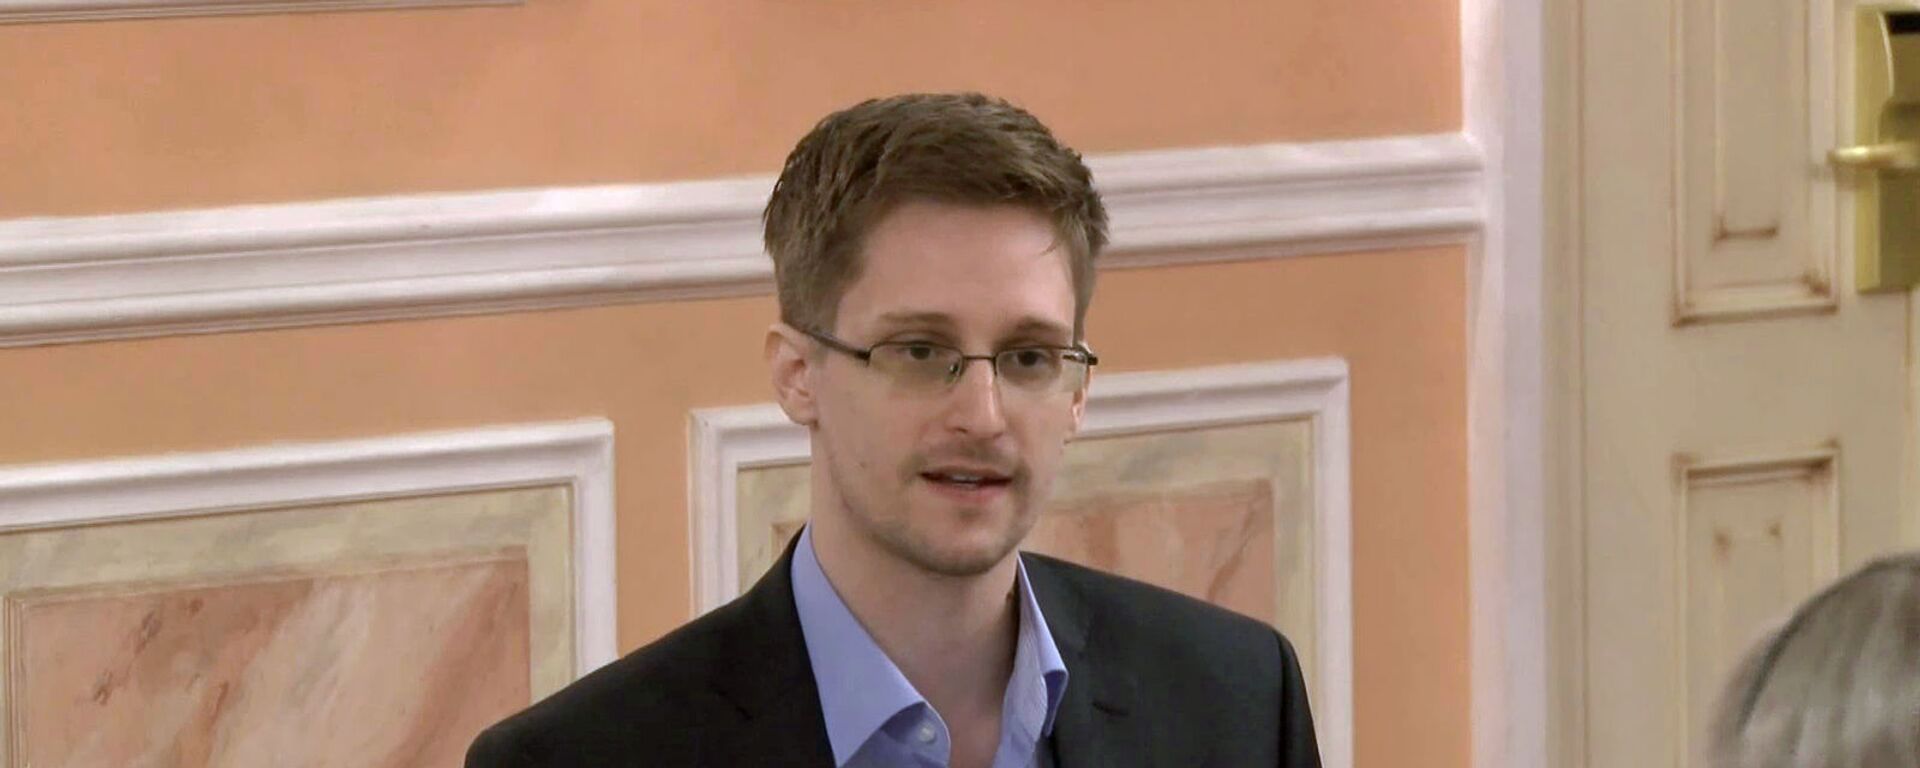 Эдвард Сноуден рассказал о прозрачности правительства на вручении премии Сэма Адамса (9 октября 2013). Москвa - Sputnik Армения, 1920, 23.09.2020